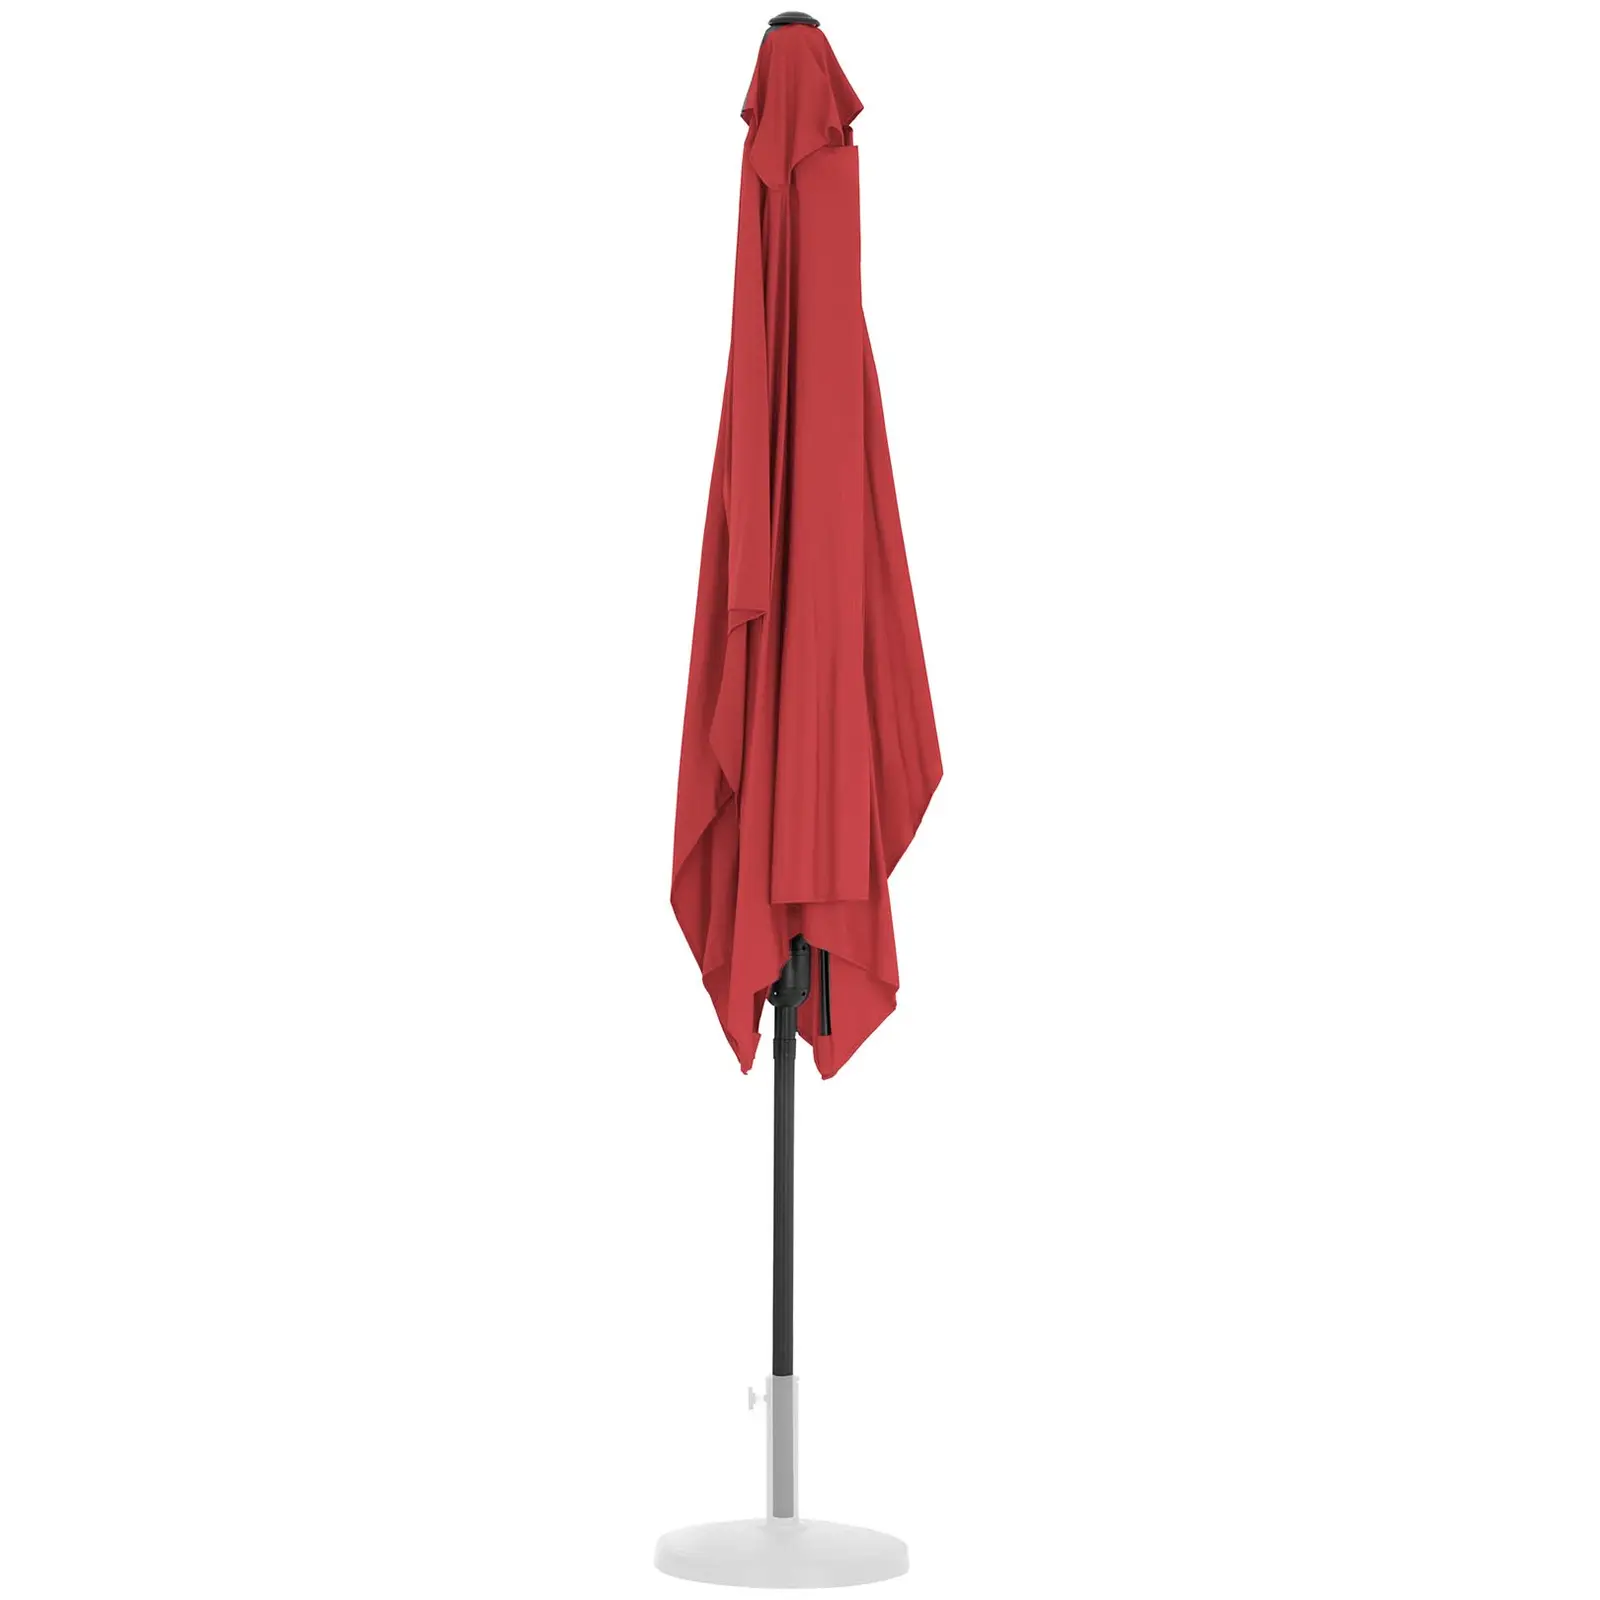 Голям външен чадър - бордо - правоъгълен - 200 x 300 cm